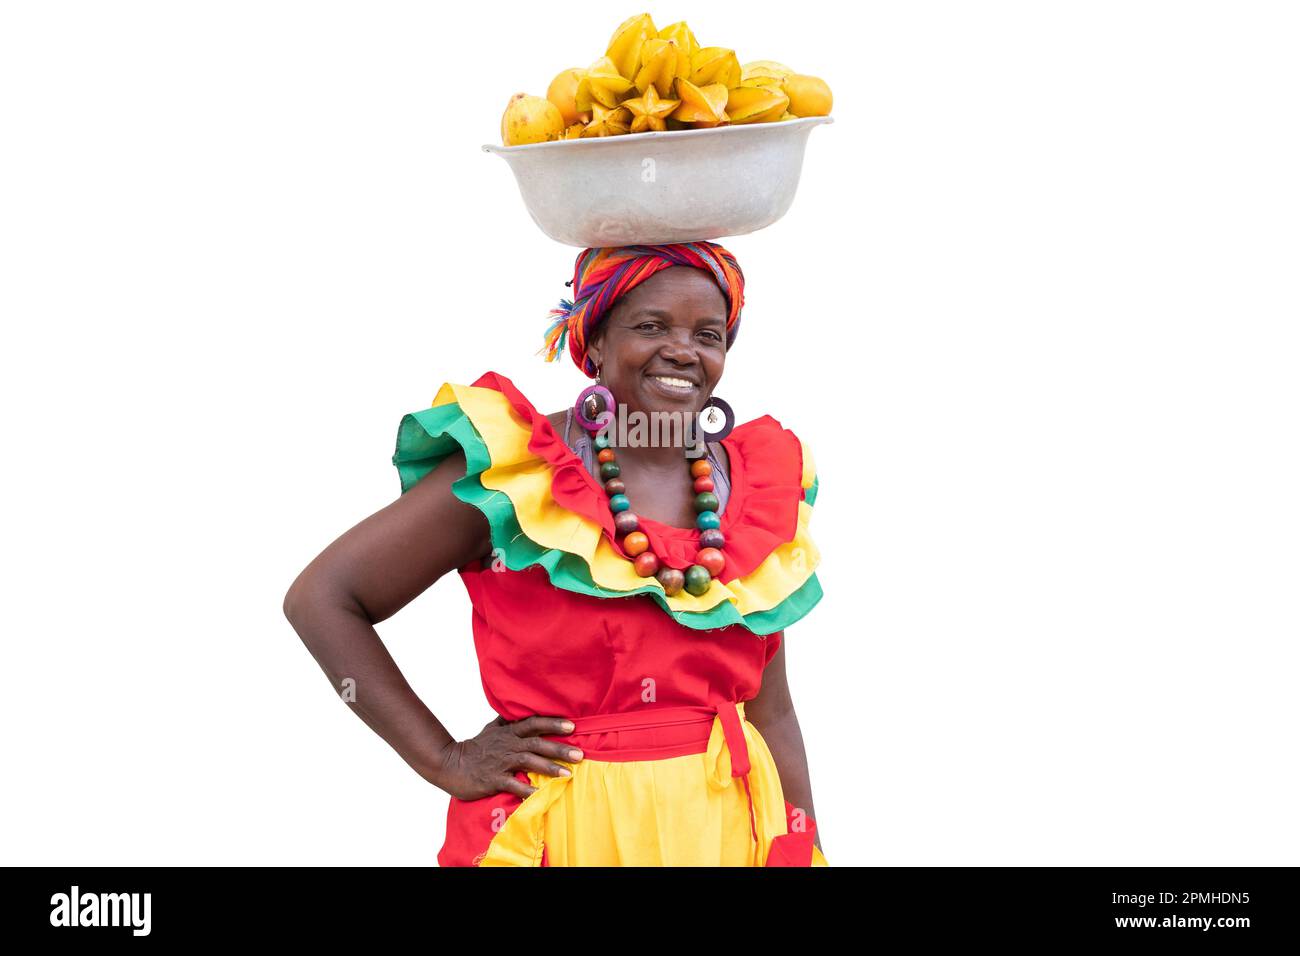 Fröhlicher Frischobst-Straßenverkäufer, Palenquera, isoliert auf weißem Hintergrund. Fröhliche afrokolumbianische Frau in traditionellen Kostümen, Cartagena, Kolumbien. Stockfoto